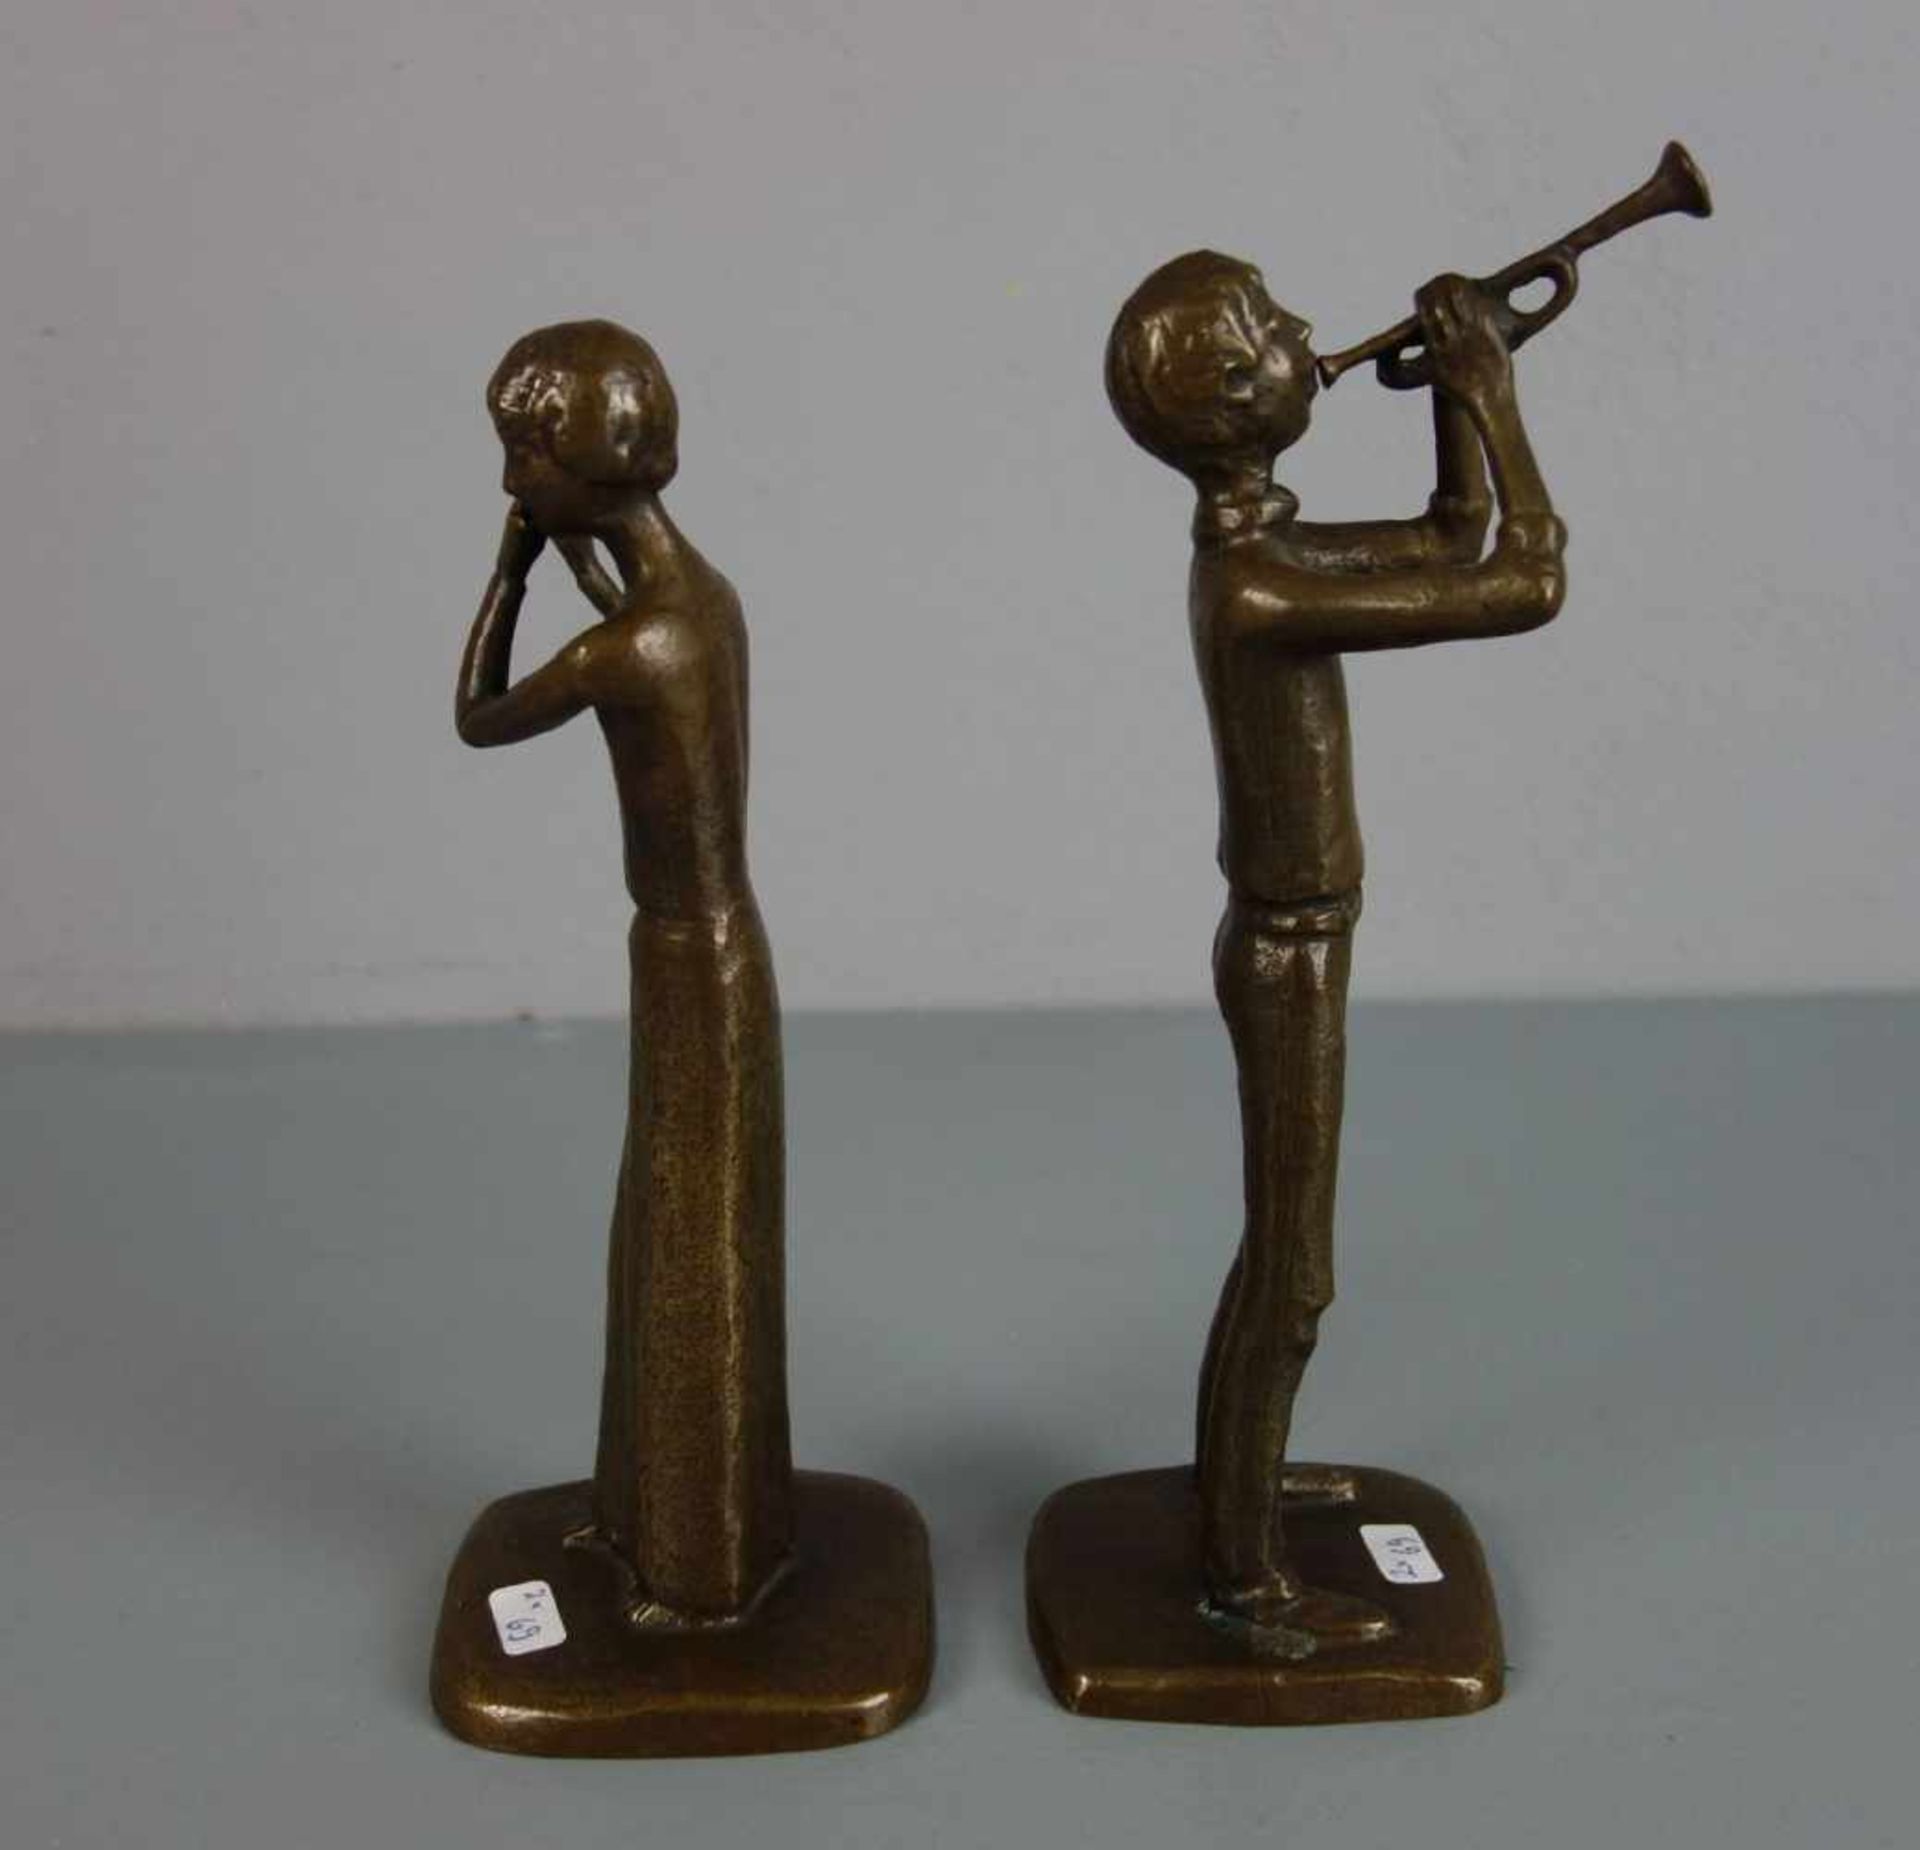 ANONYMER BILDHAUER (20. / 21. JH.), Paar Bronze - Skulpturen: "Trompeter" und "Flötistin" / two - Image 4 of 4